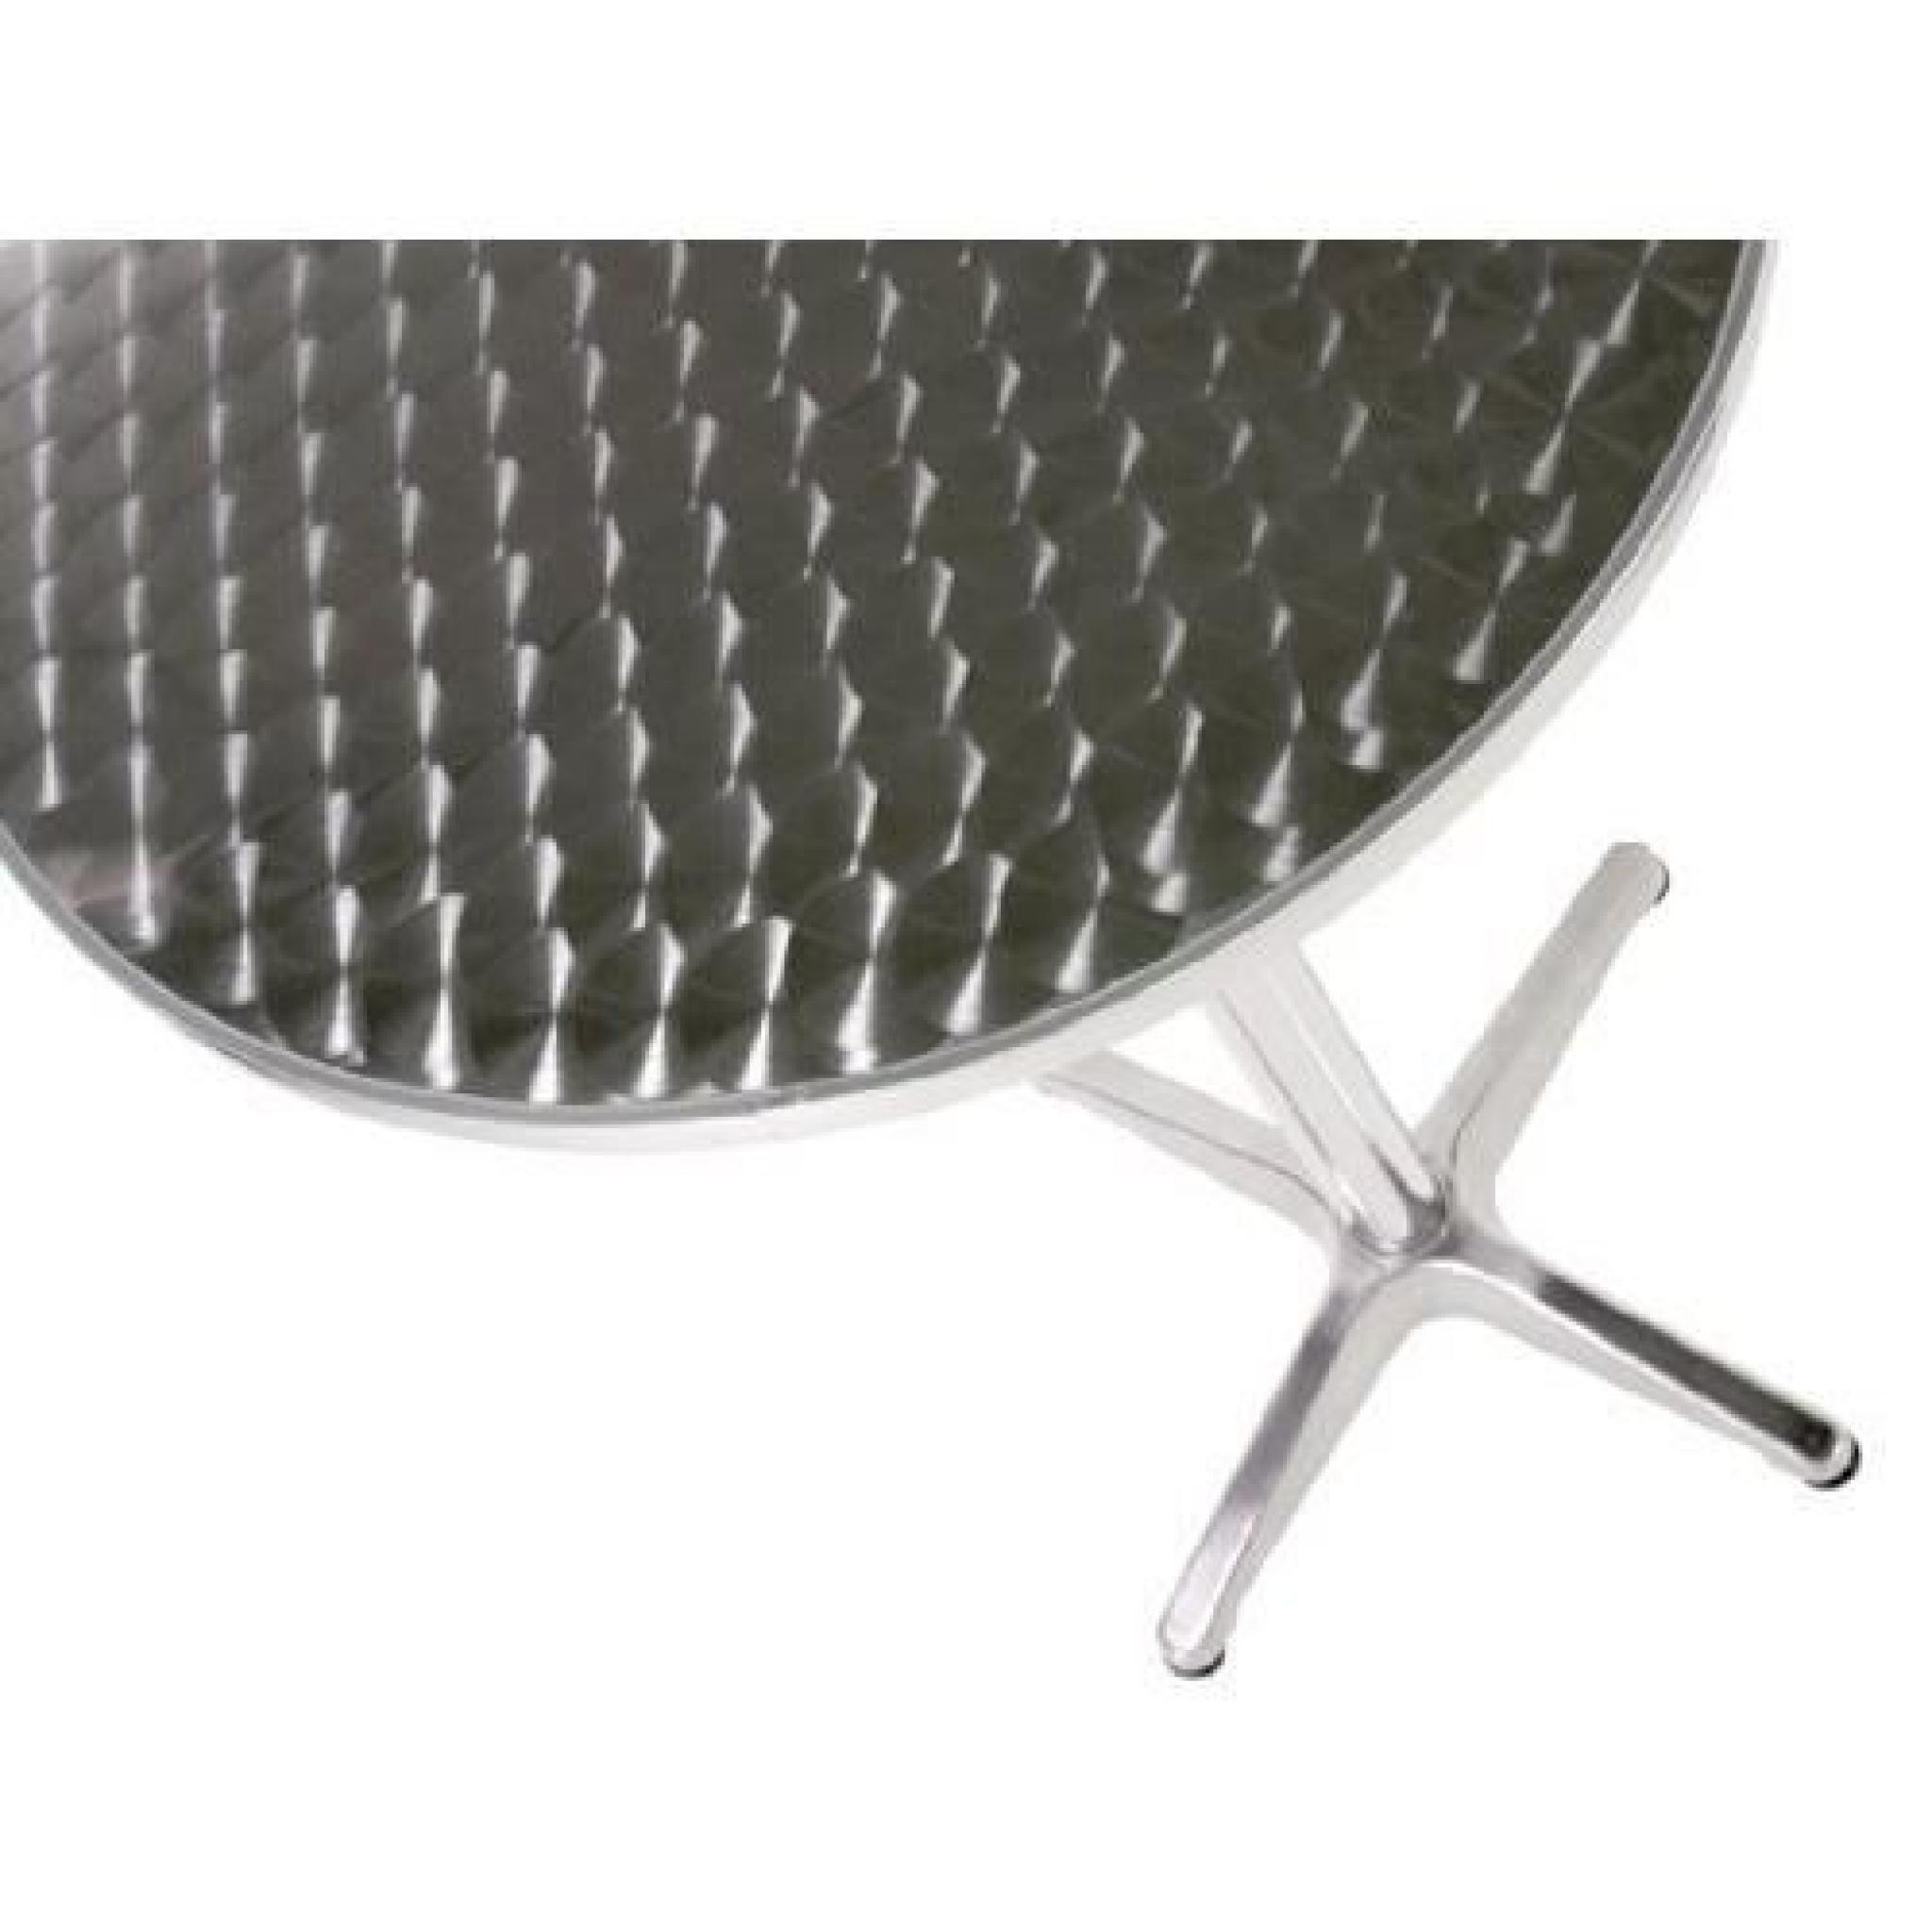 Table de bistrot - Ø 60 cm - 2 hauteurs réglables 70 ou 110 cm - acier inoxydable et aluminuim pas cher